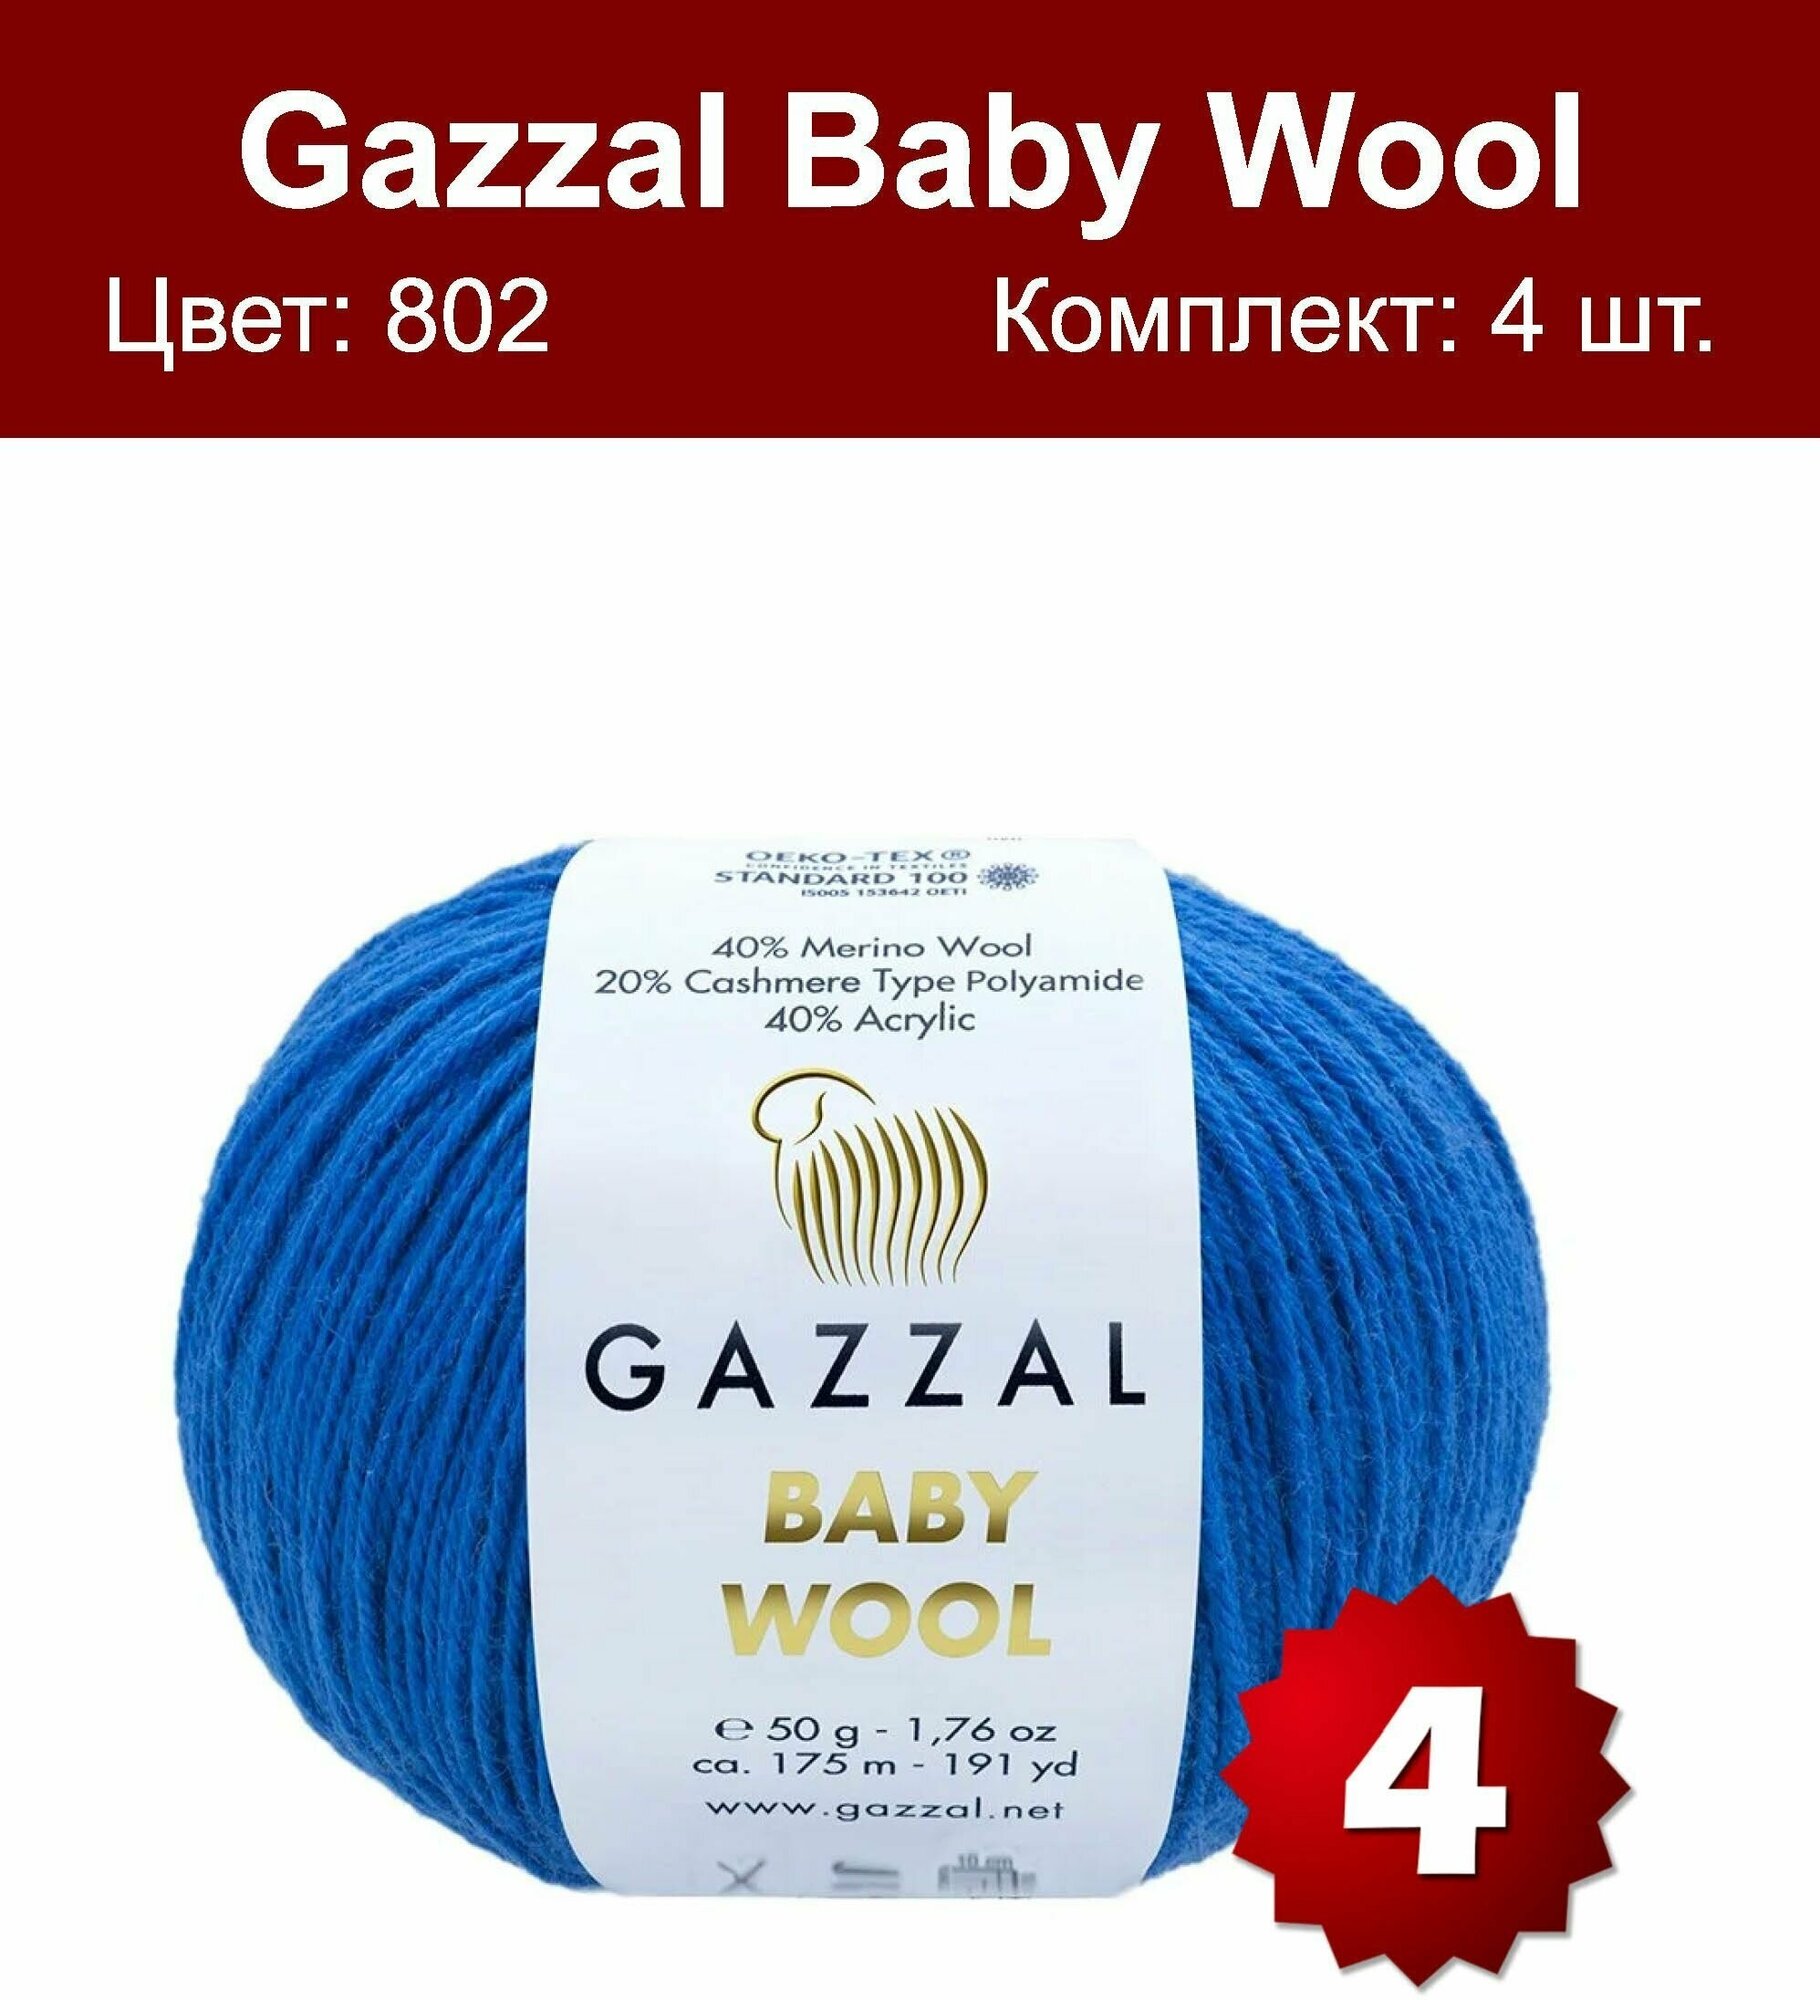 Пряжа Gazzal Baby Wool -4 шт, темно-синий (802), 175м/50г, 40% мериносоваяшерсть, 20% кашемир, 40% акрил — купить в интернет-магазине по низкой ценена Яндекс Маркете